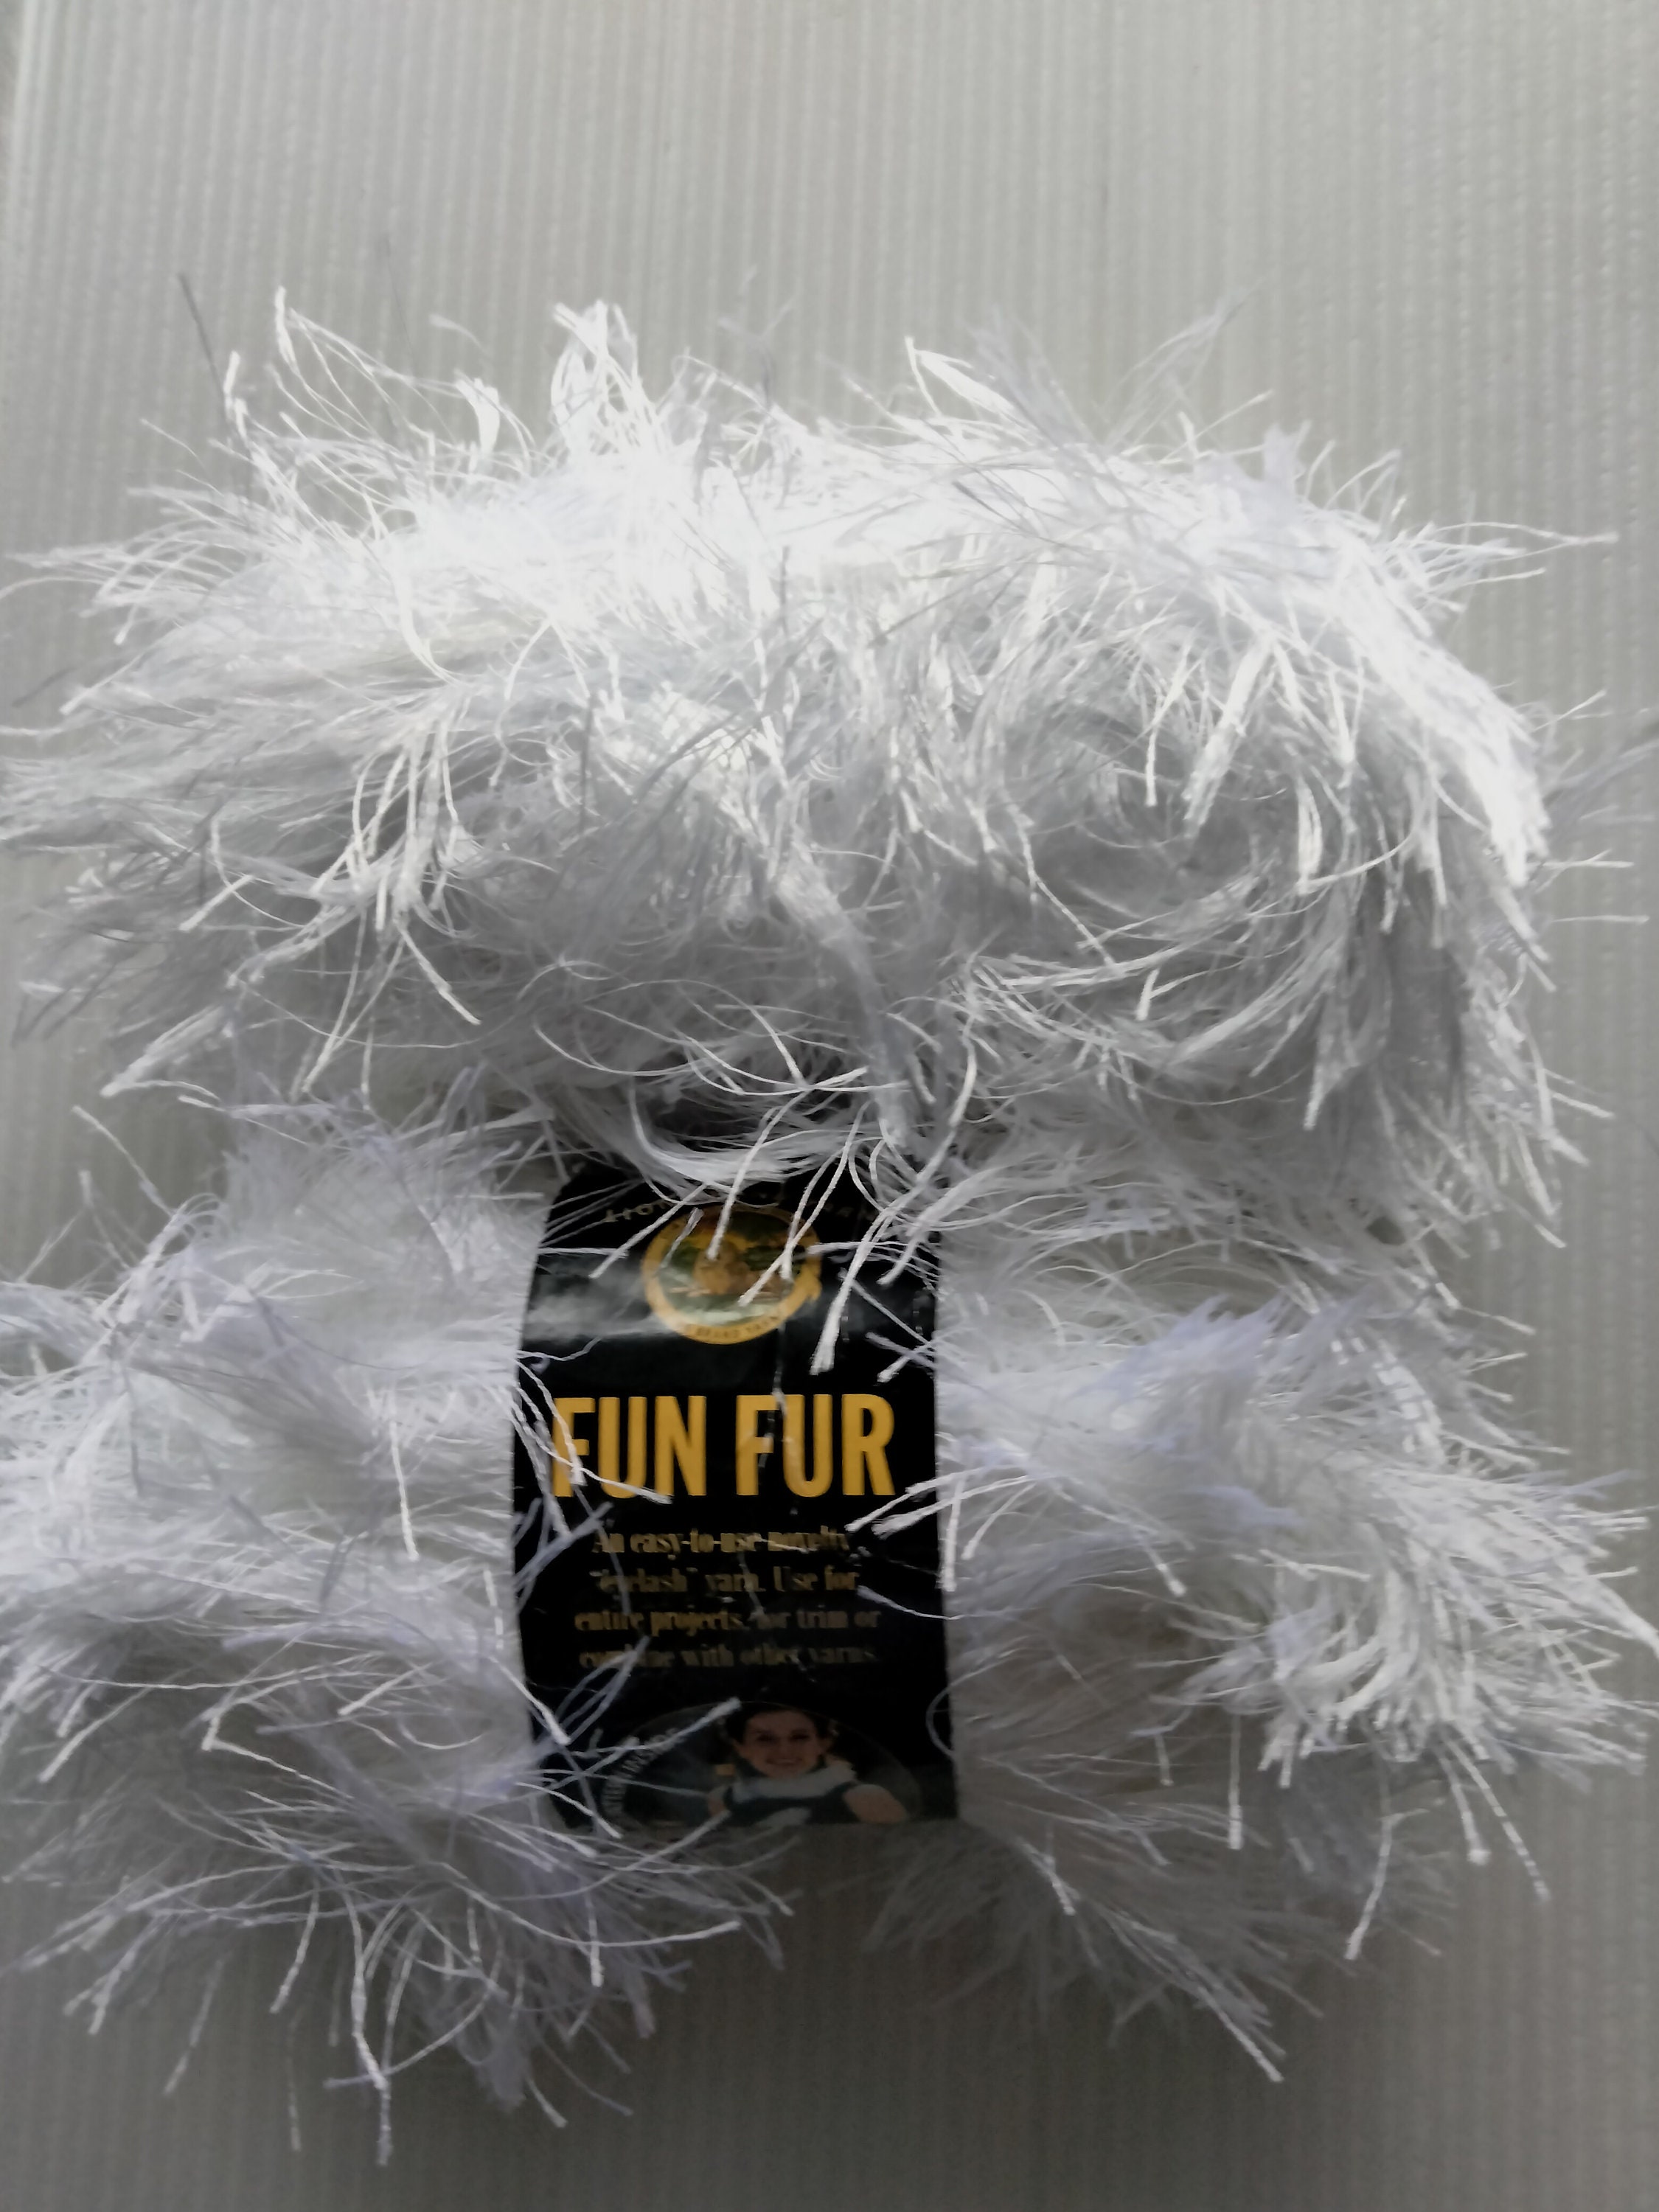 2 Skein Lion Brand Fun Fur Yarn White 